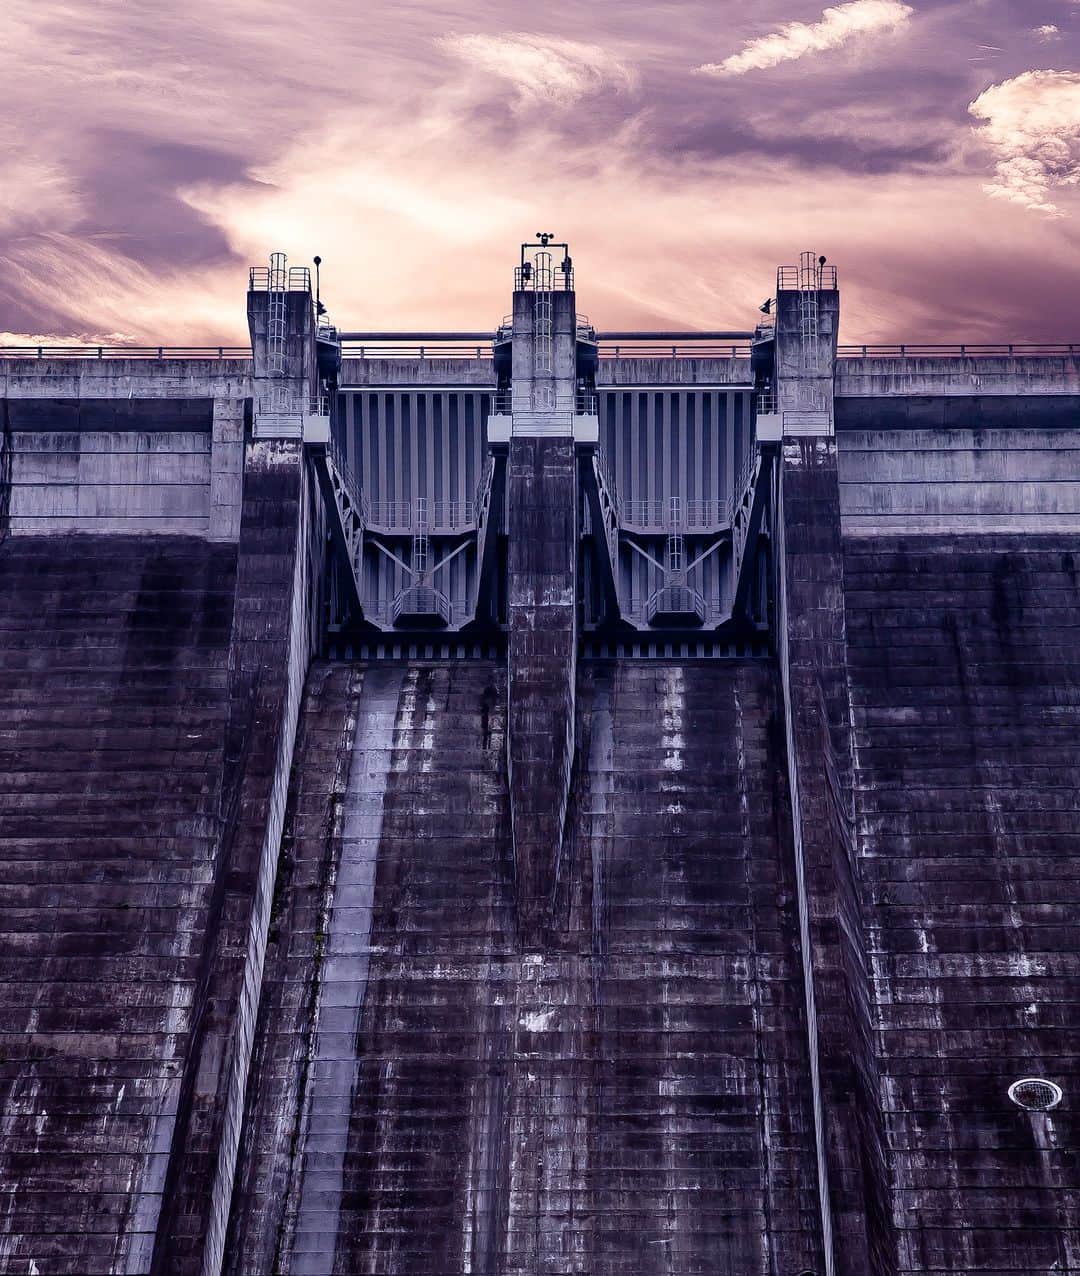 東京電力ホールディングス株式会社のインスタグラム：「上野ダム Ueno Dam  上野ダムは、群馬県多野郡上野村にある神流川水力発電所（純揚水式）の下部ダムです。 神流川水力発電所は、上部ダムである長野県・南相木ダムと上野ダムの落差653mを利用して発電しています。  #東京電力 #tepco #群馬県 #ダム #ダム巡り #ダム好き #damphotography #damphoto #水力発電 #再生可能エネルギー #renewableenergy #renewable #renewablepower #風景写真 #景色写真 #曇り空 #くもり #clouds_of_our_world #cloudscapes #cloudsky」